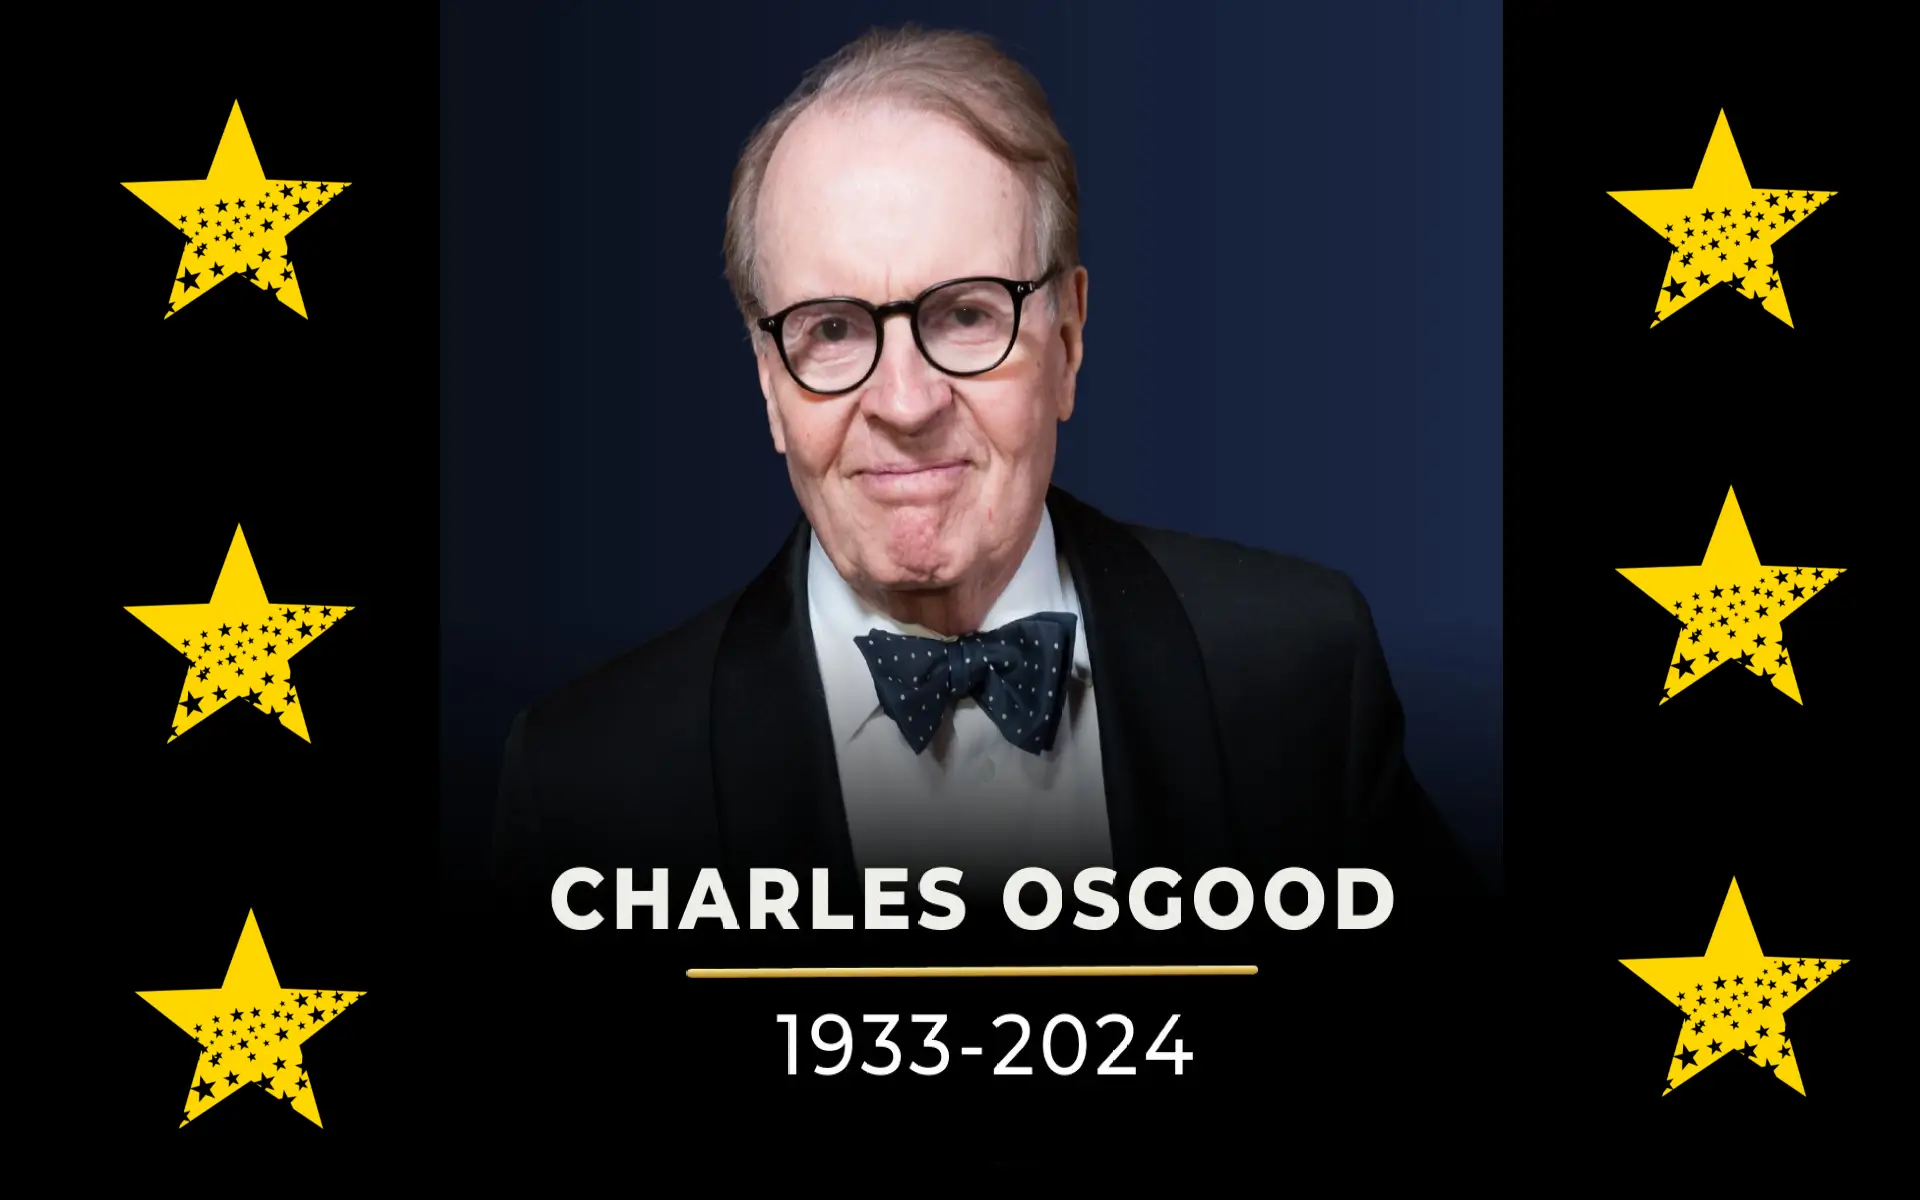 Charles Osgood Dies At 91